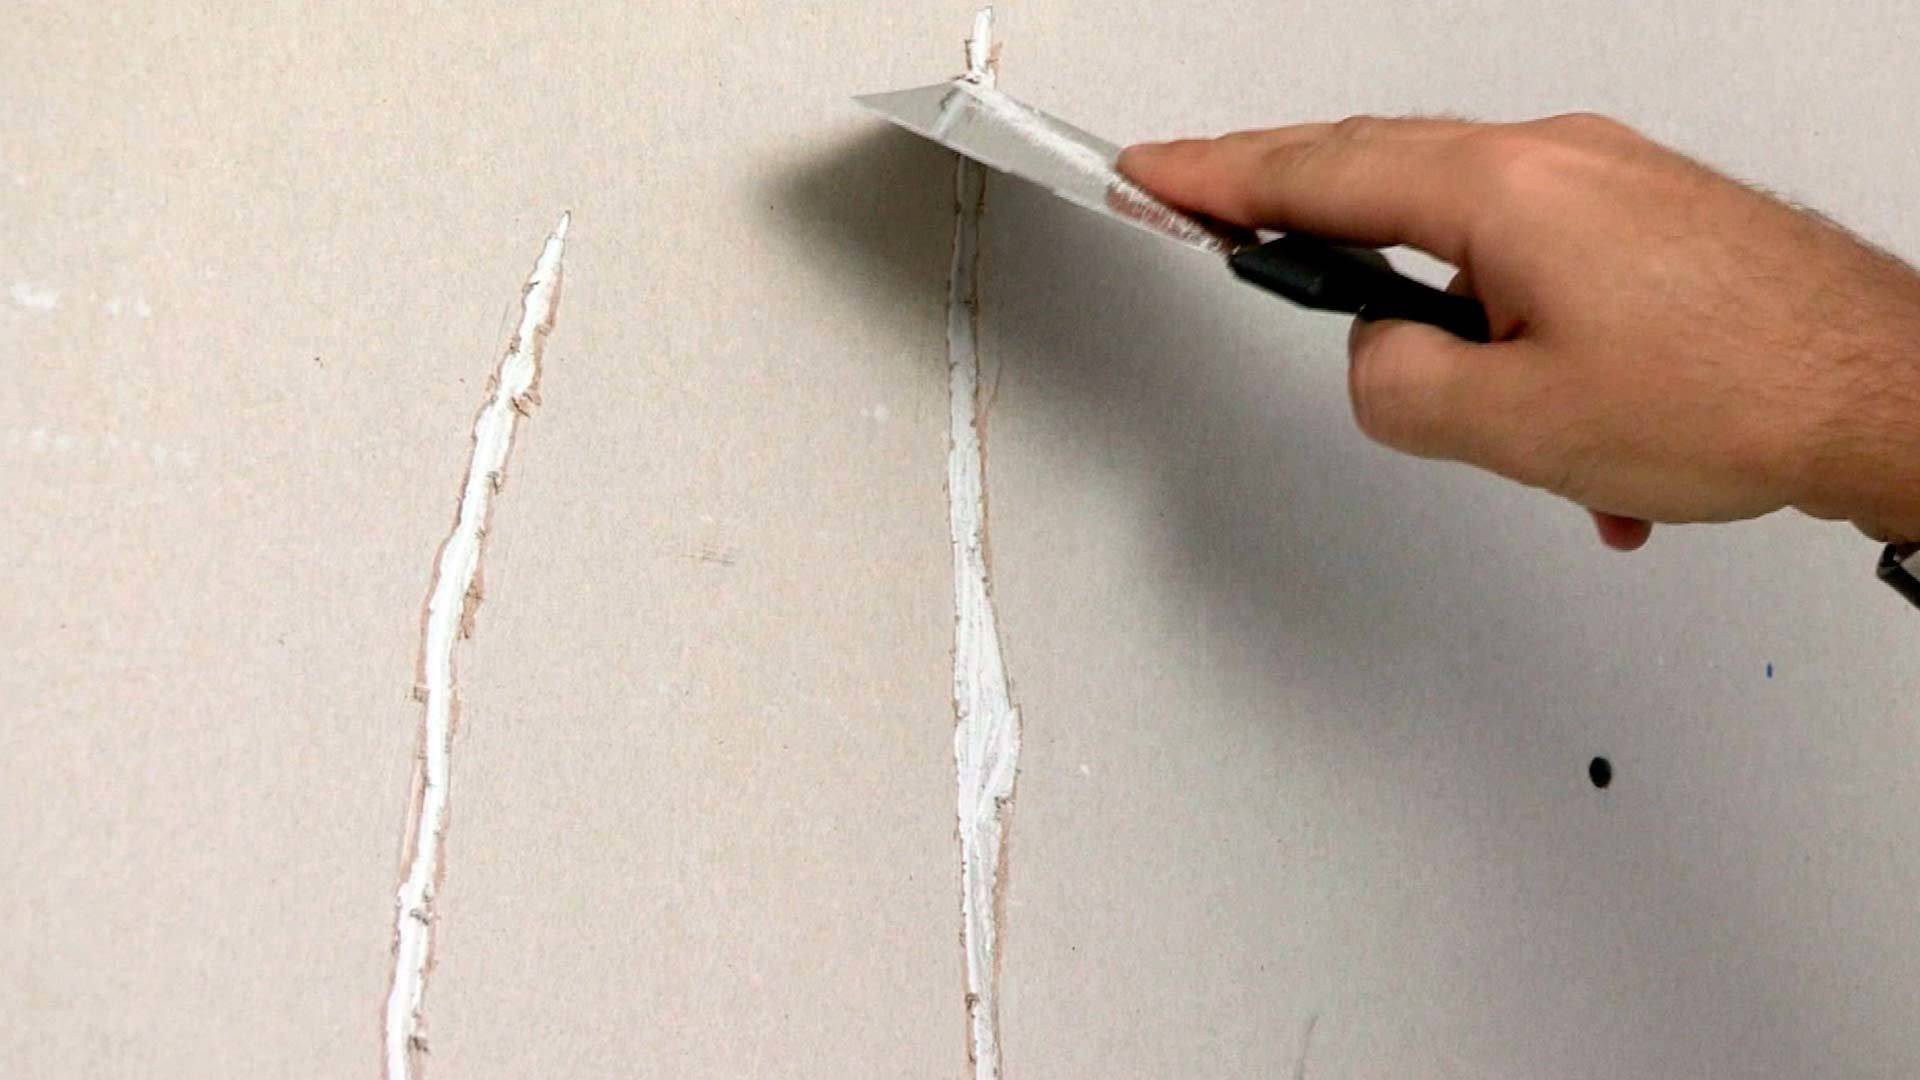 Трескается штукатурка на стенах что делать, ремонт трещин на декоративной штукатурке своими руками видео, технология восстановления потрескавшейся стены